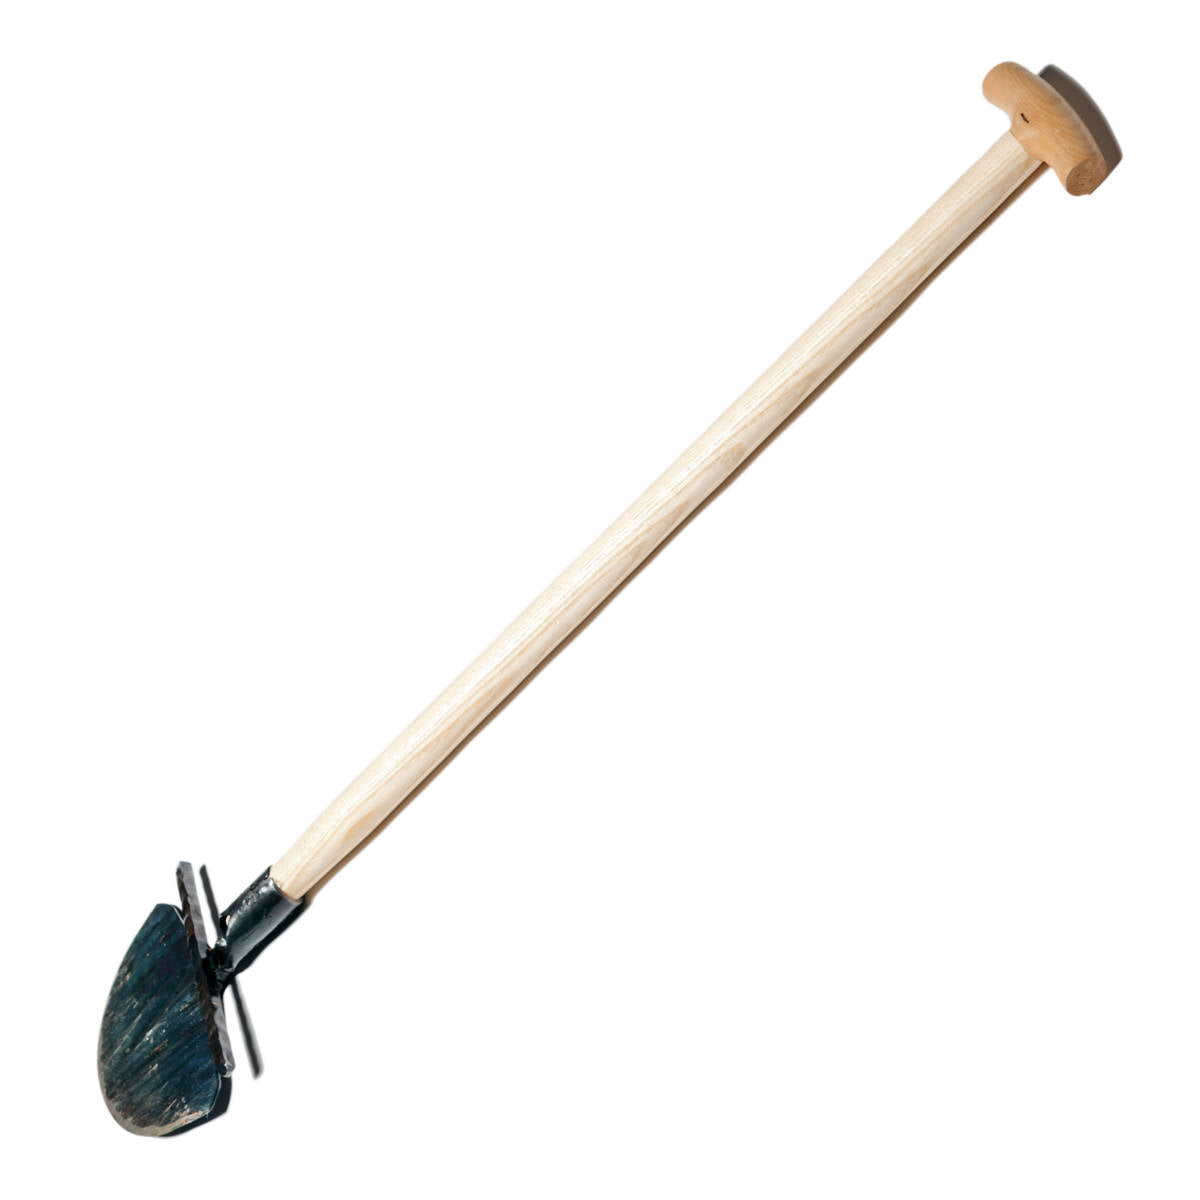 Handgemachter Rasenkantenstecher, 85cm Stiel mit T-Griff